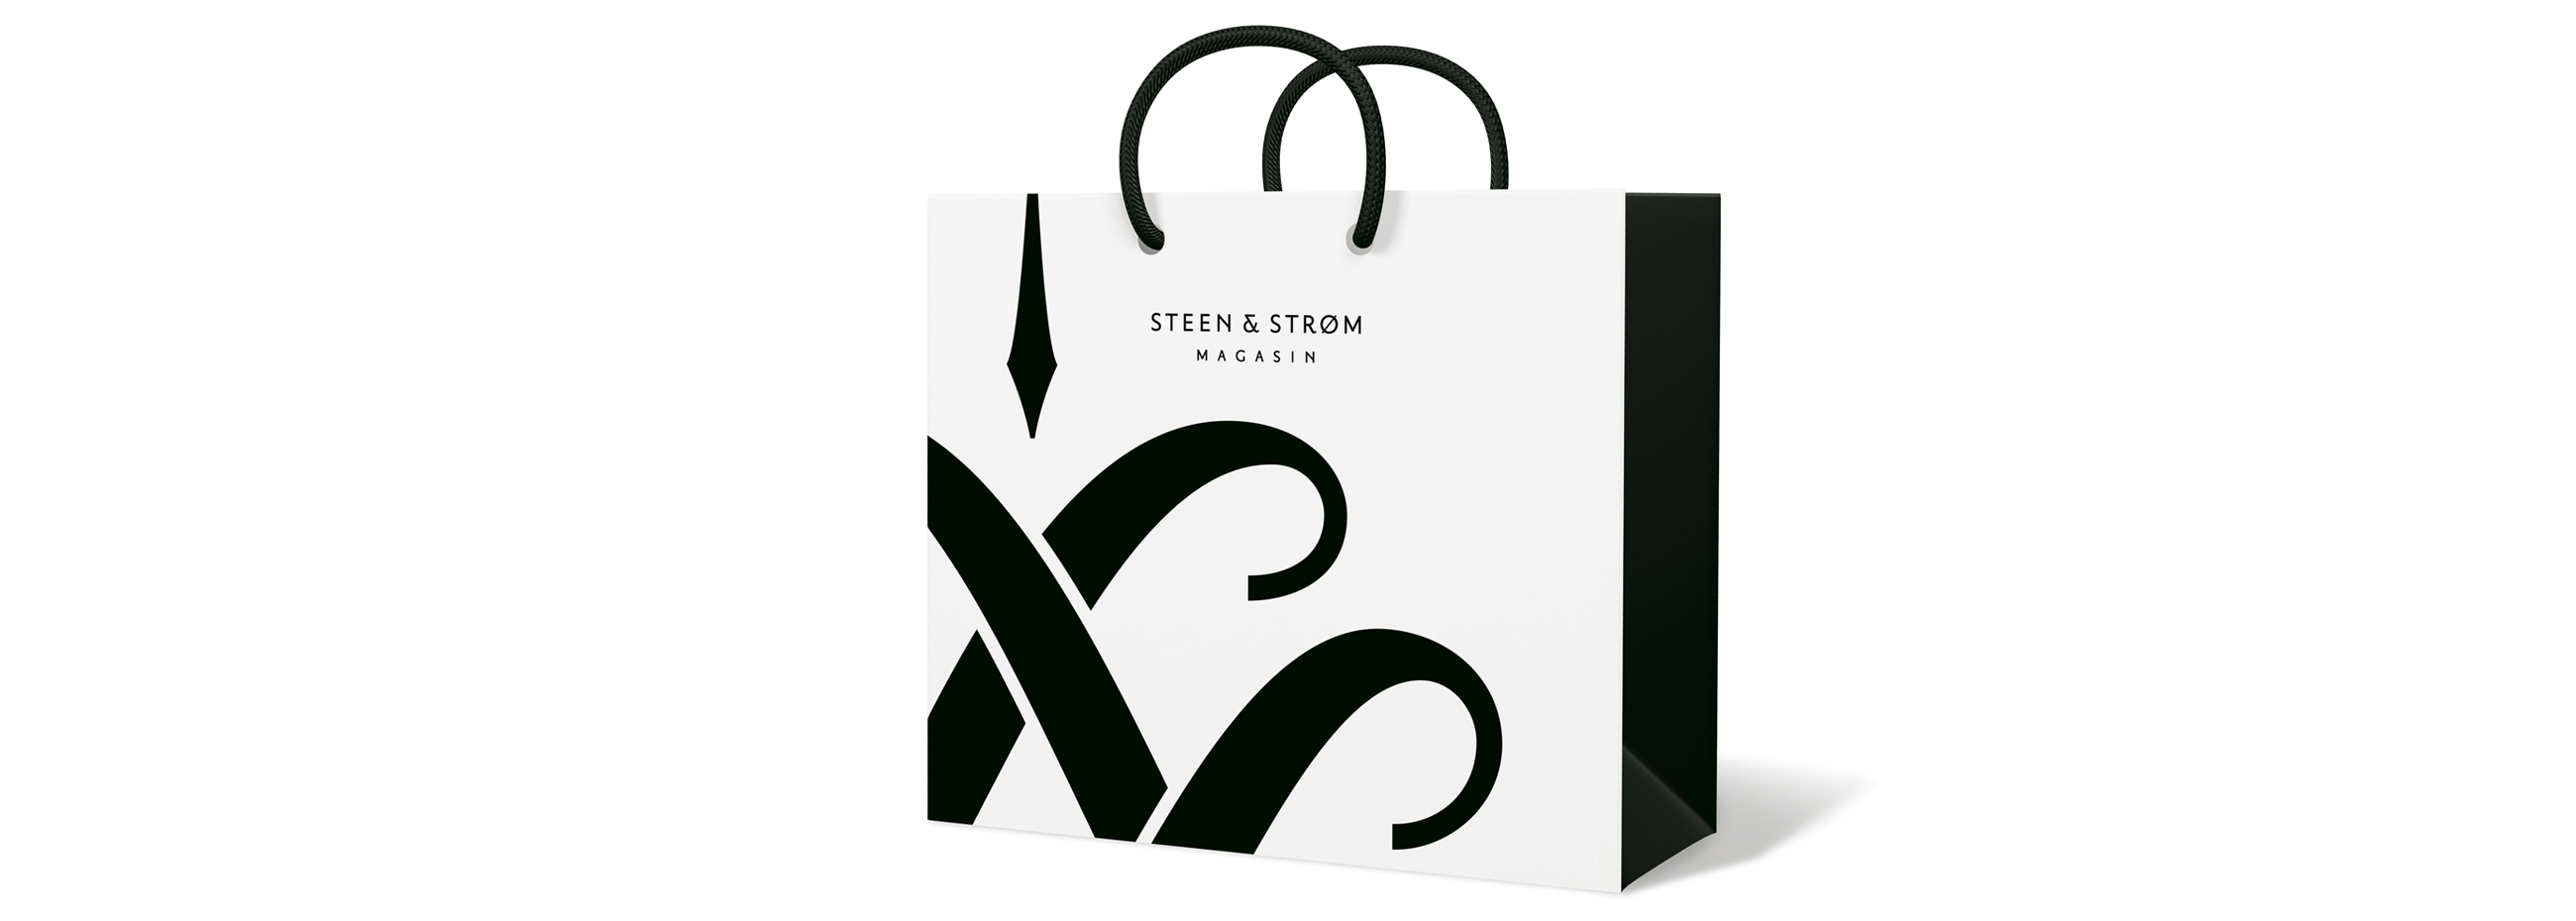 Steen&Strøm magasin shopping bag oslo. Visuell identitet visual identity.